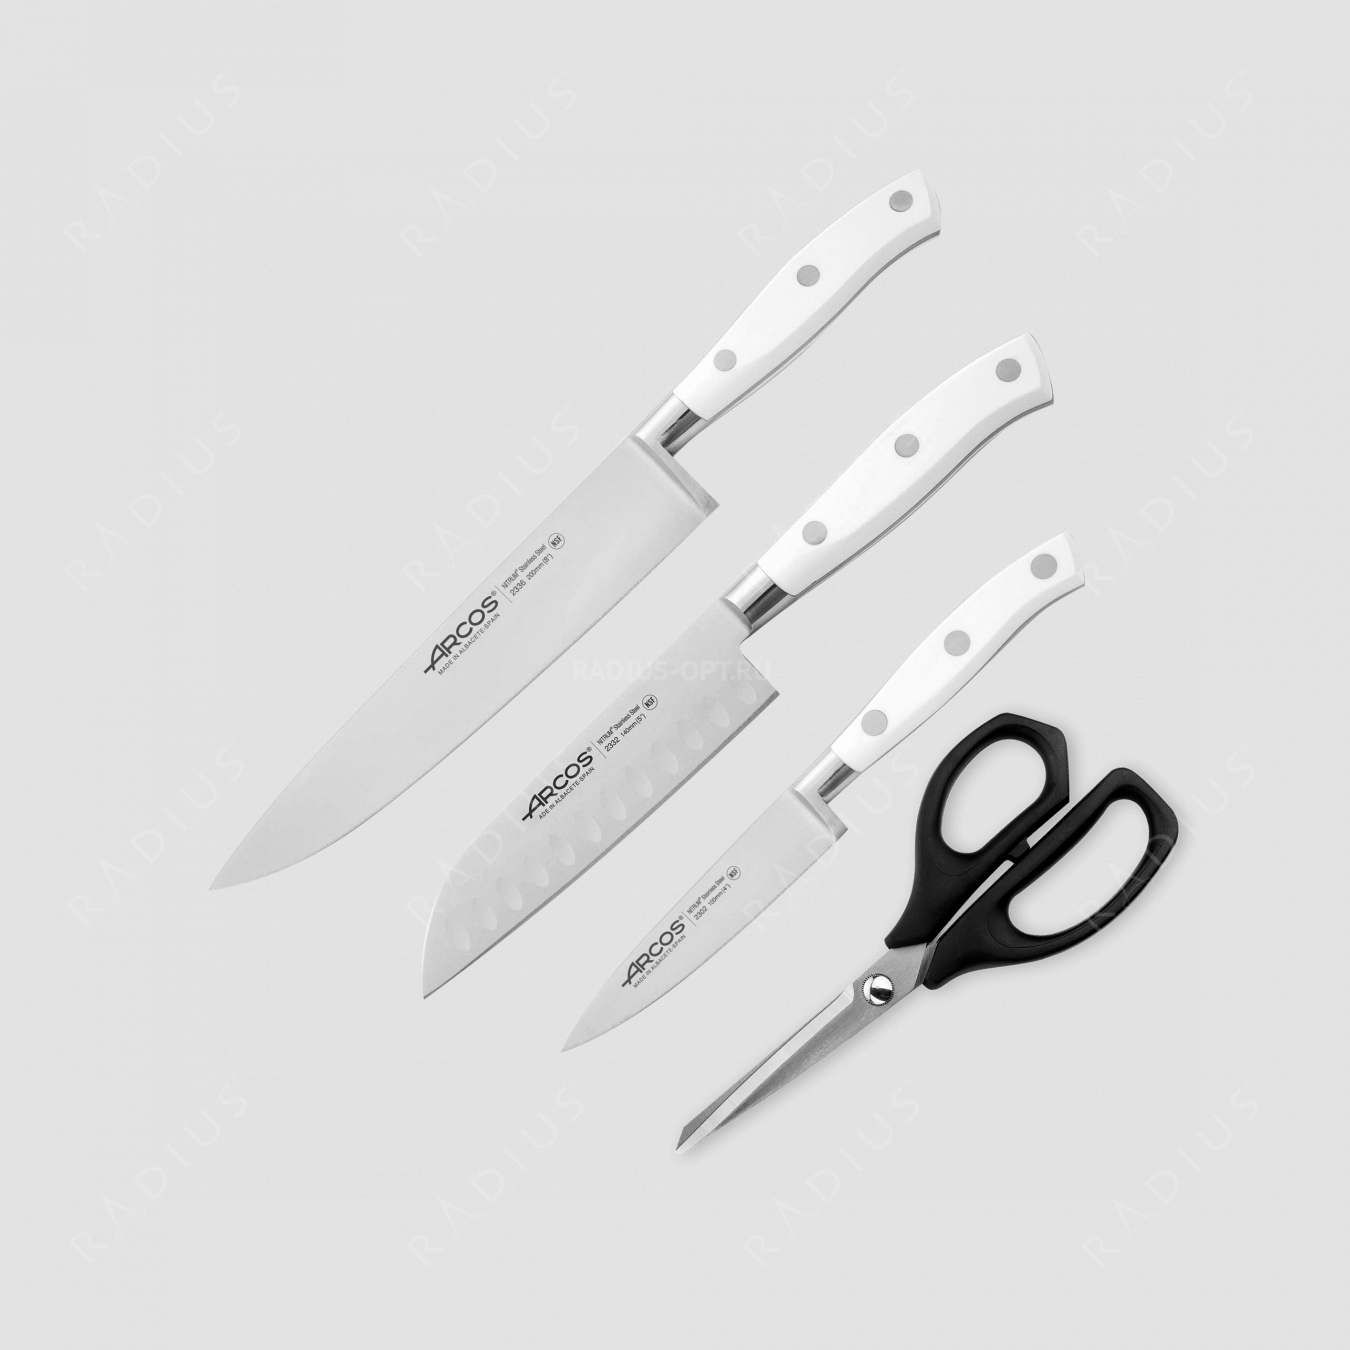 Набор кухонных ножей 3 шт. (10 см, 14 см, 20 см), белые ручки, серия Riviera Blanca, ARCOS, Испания